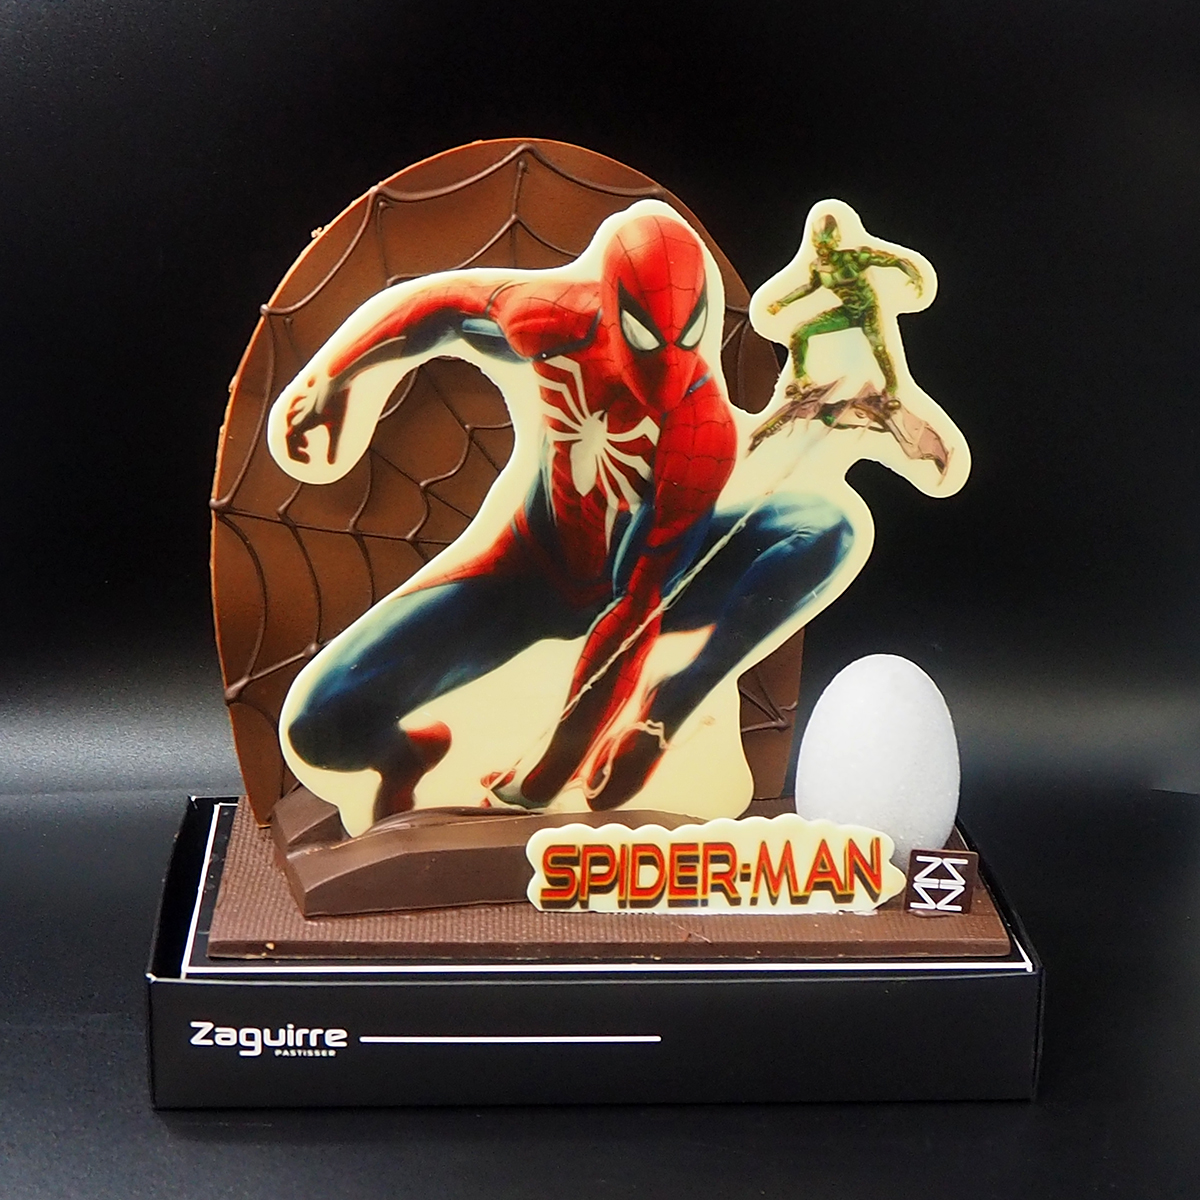 Mona de Pascua de chocolate de Spiderman de Marvel elaborada artesanalmente por Zaguirre Pastisser.